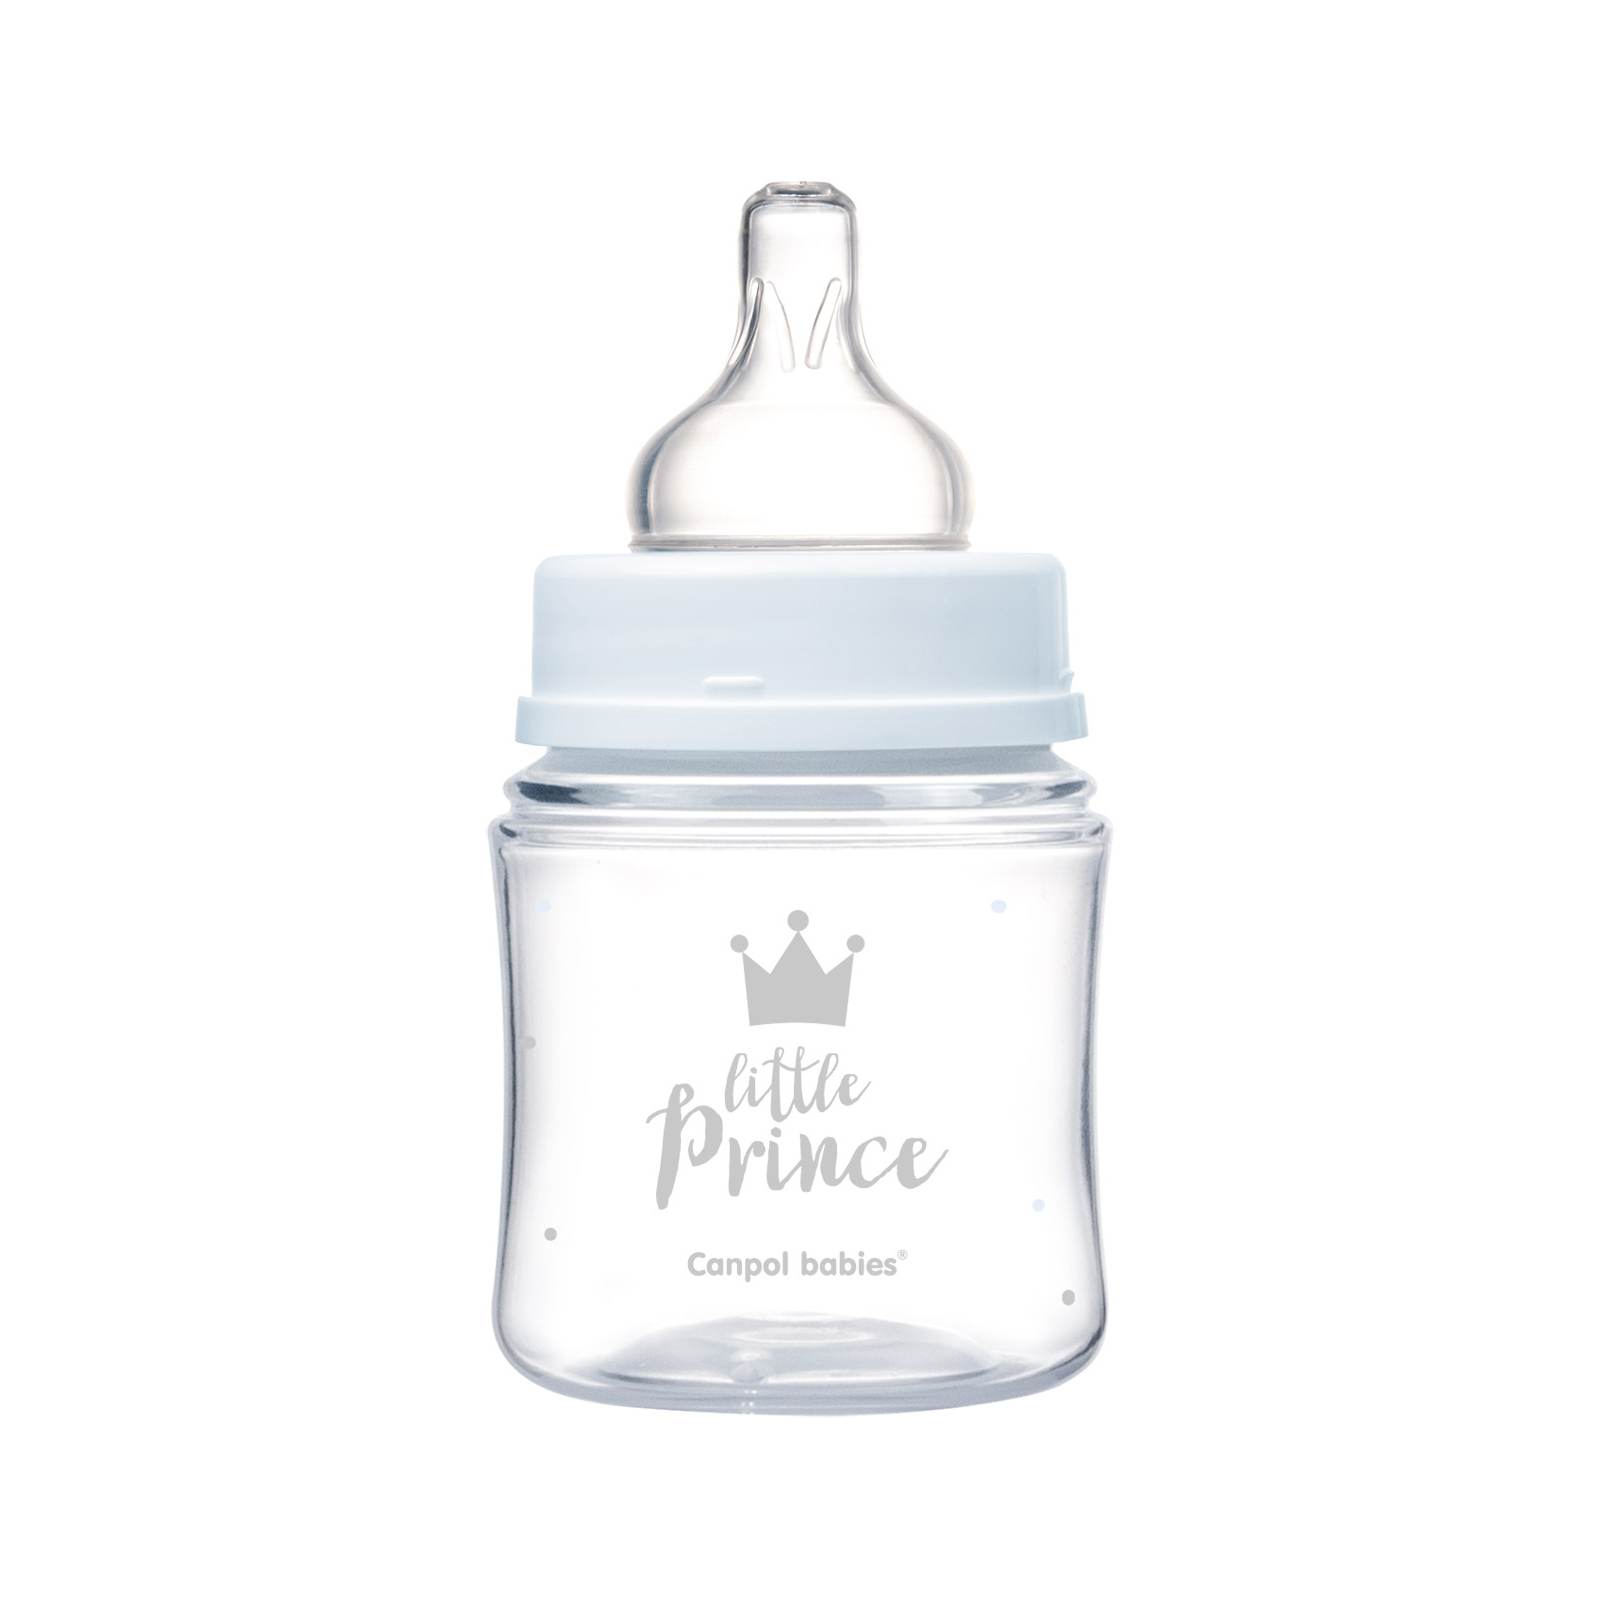 Бутылочка для кормления Canpol babies Royal Baby с широким отверстием 120 мл Синяя (35/233_blu) изображение 3